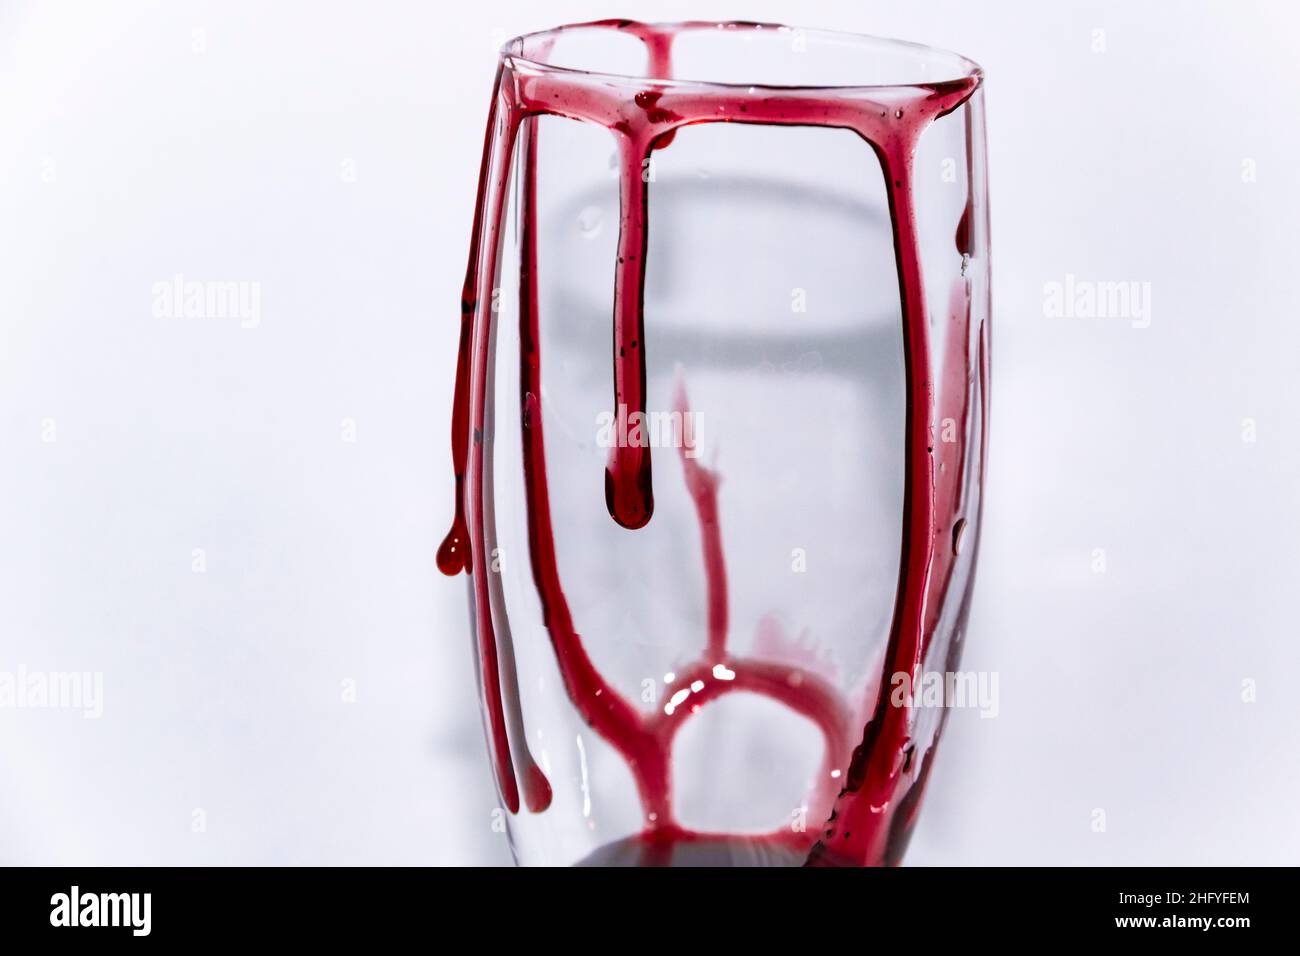 Ein Blick auf die Hälfte des Glases, auf der Blut fließt. Blutiges Weinglas – konzeptuelles Foto. Stockfoto